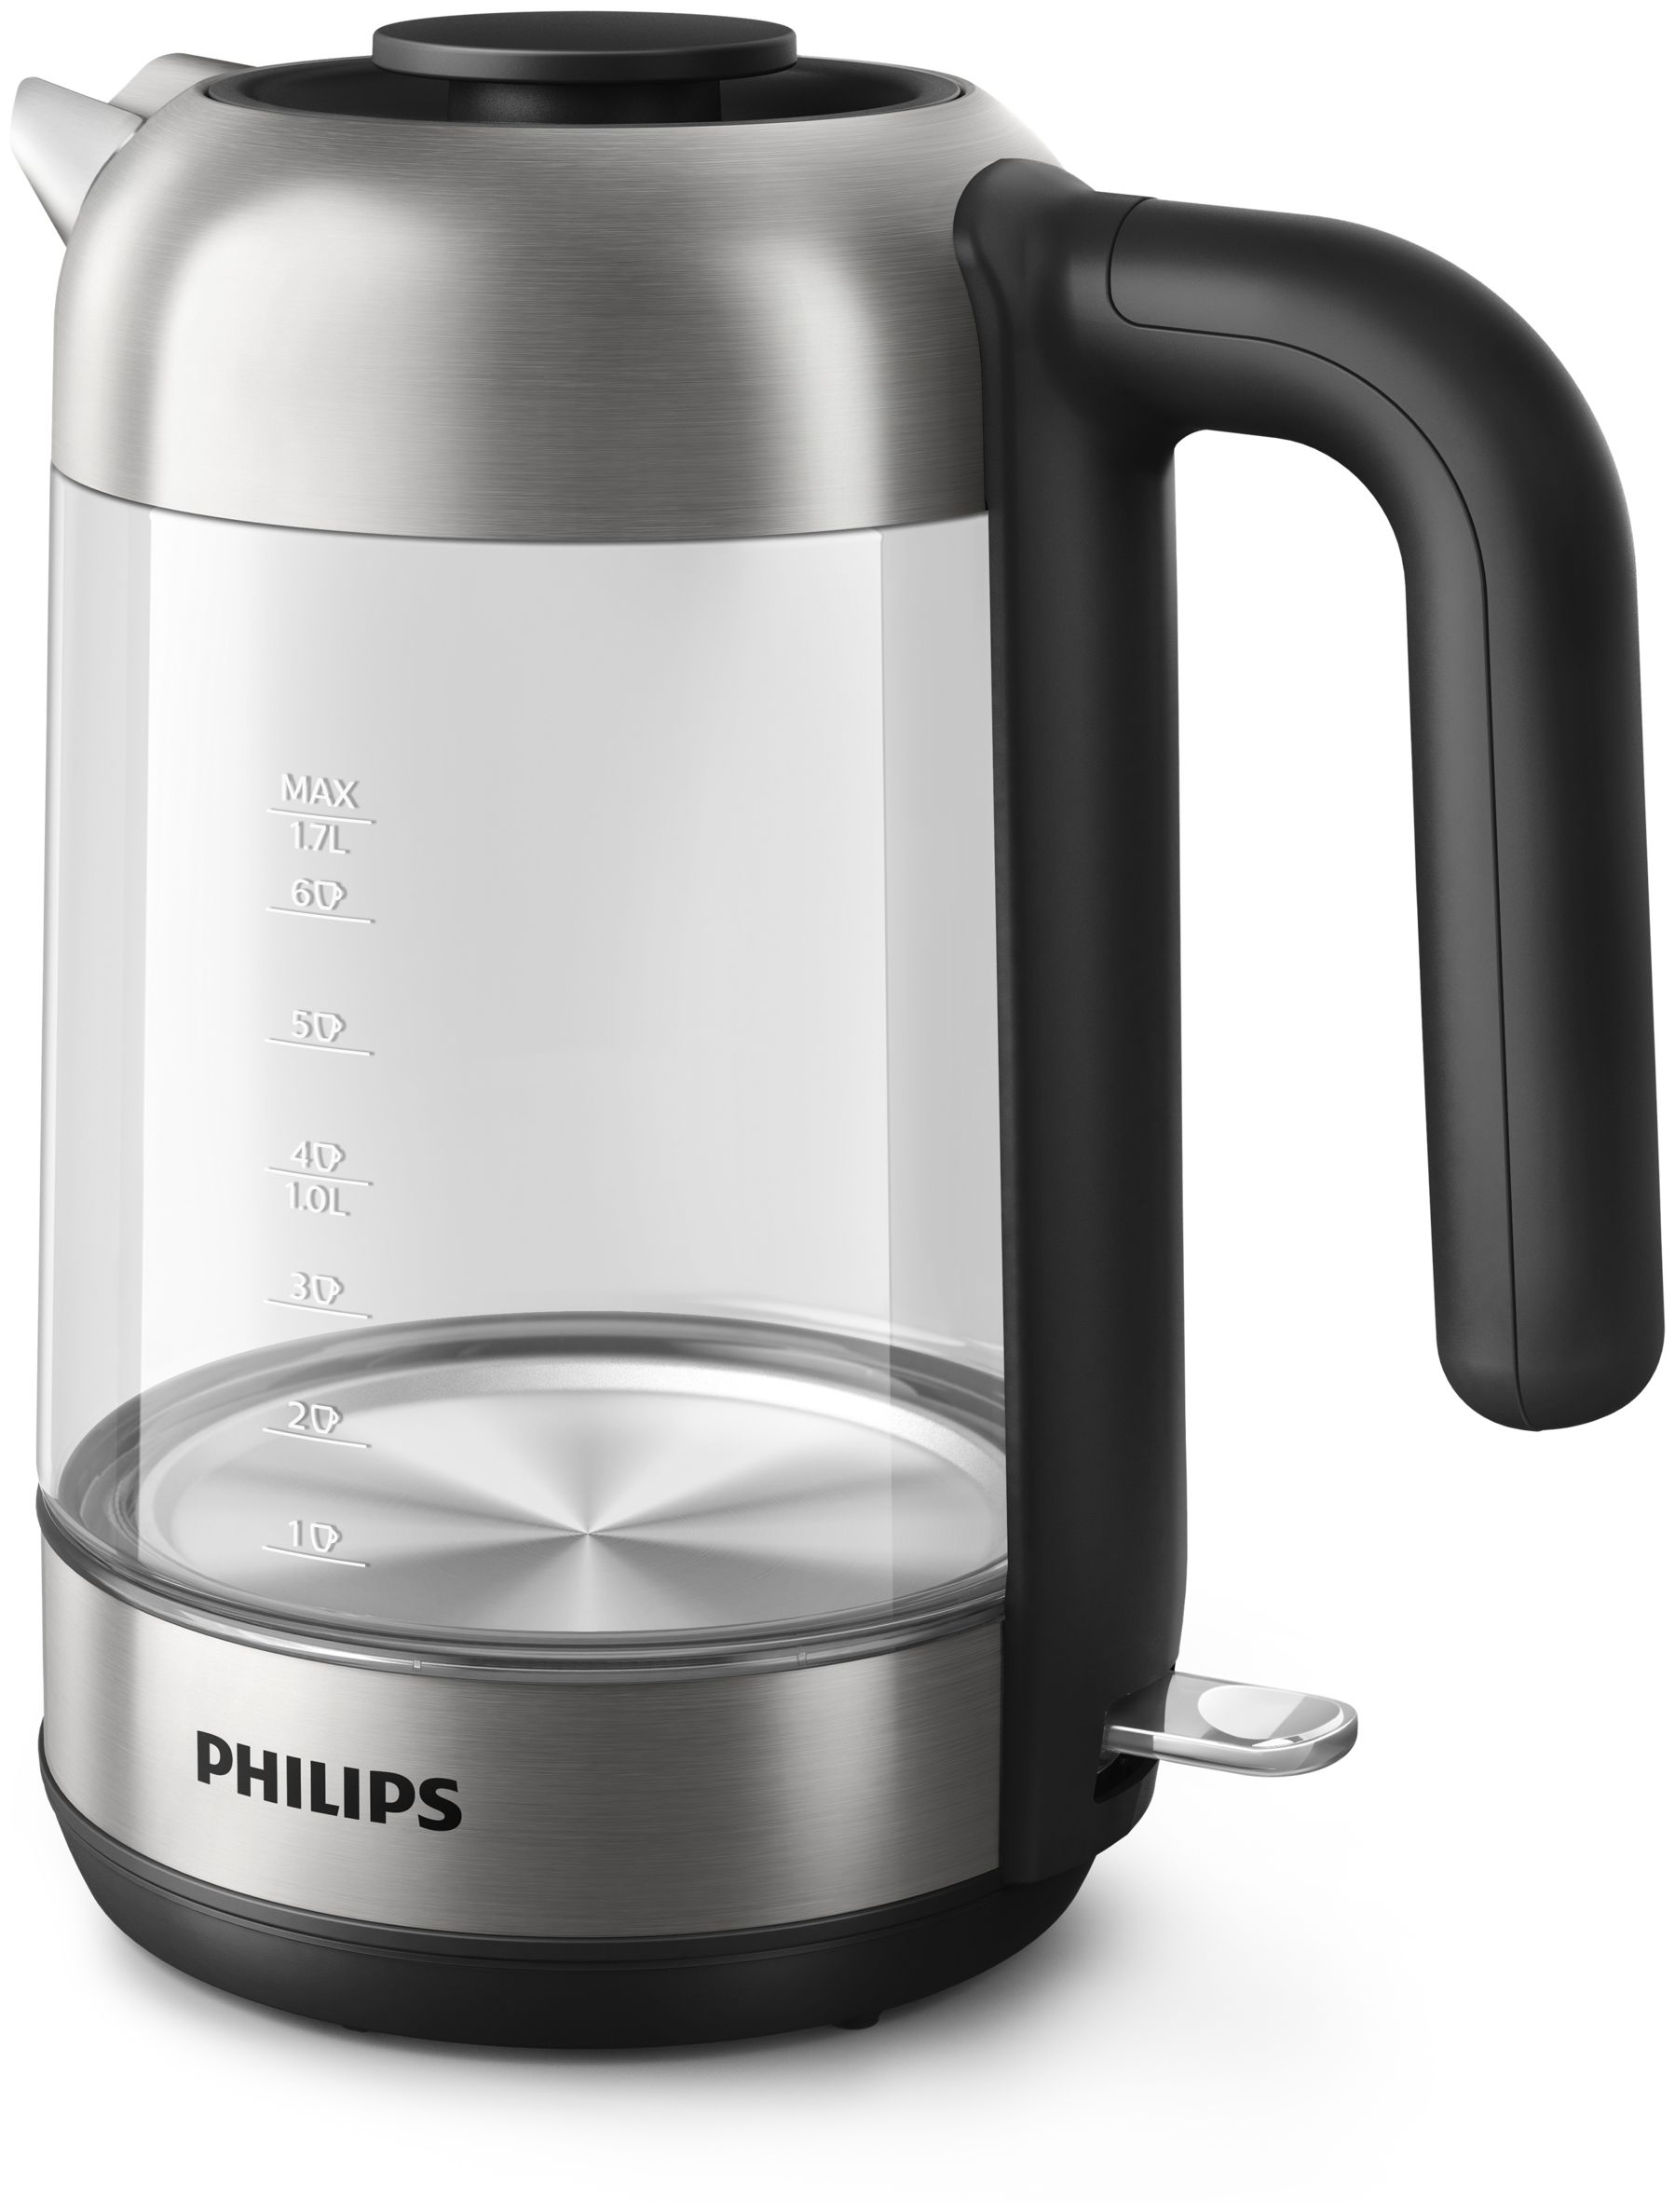 Philips HD9339/80 series W 2200 von (Schwarz, expert 5000 Technomarkt Wasserkocher Edelstahl, Transparent) l 1,7